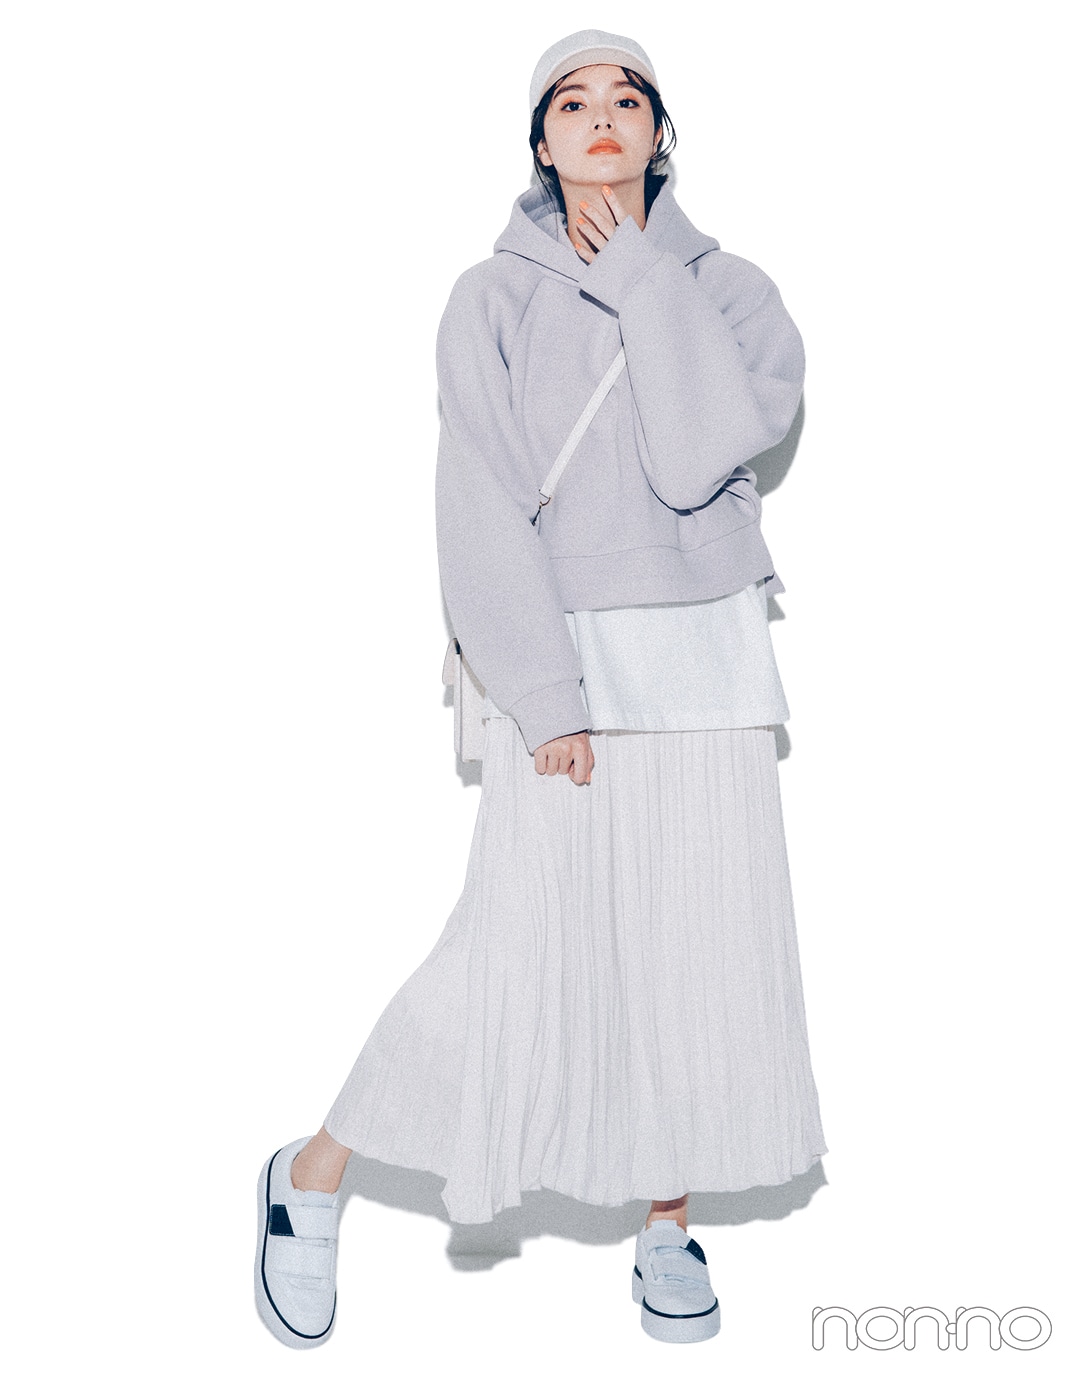 新川優愛が着る2021年春の“着たいものファースト”なコーデレッスンクロップト丈フーディ１